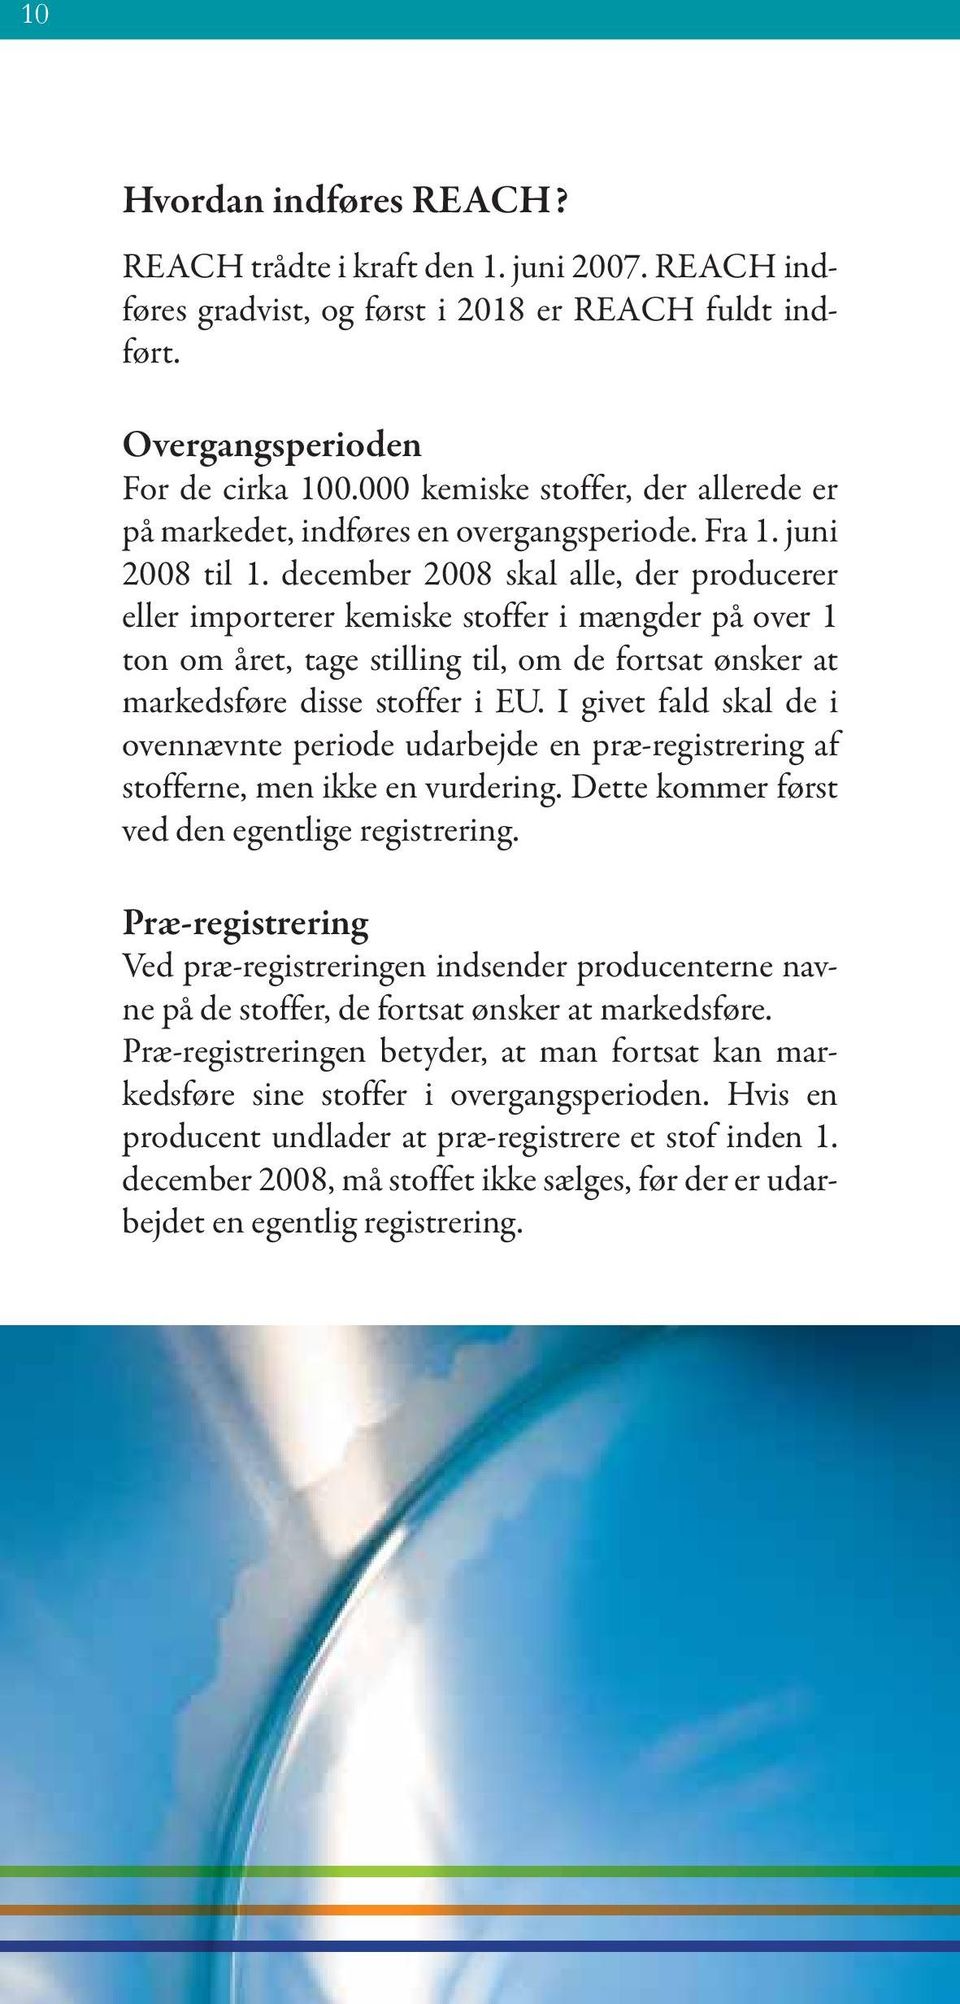 december 2008 skal alle, der producerer eller importerer kemiske stoffer i mængder på over 1 ton om året, tage stilling til, om de fortsat ønsker at markedsføre disse stoffer i EU.